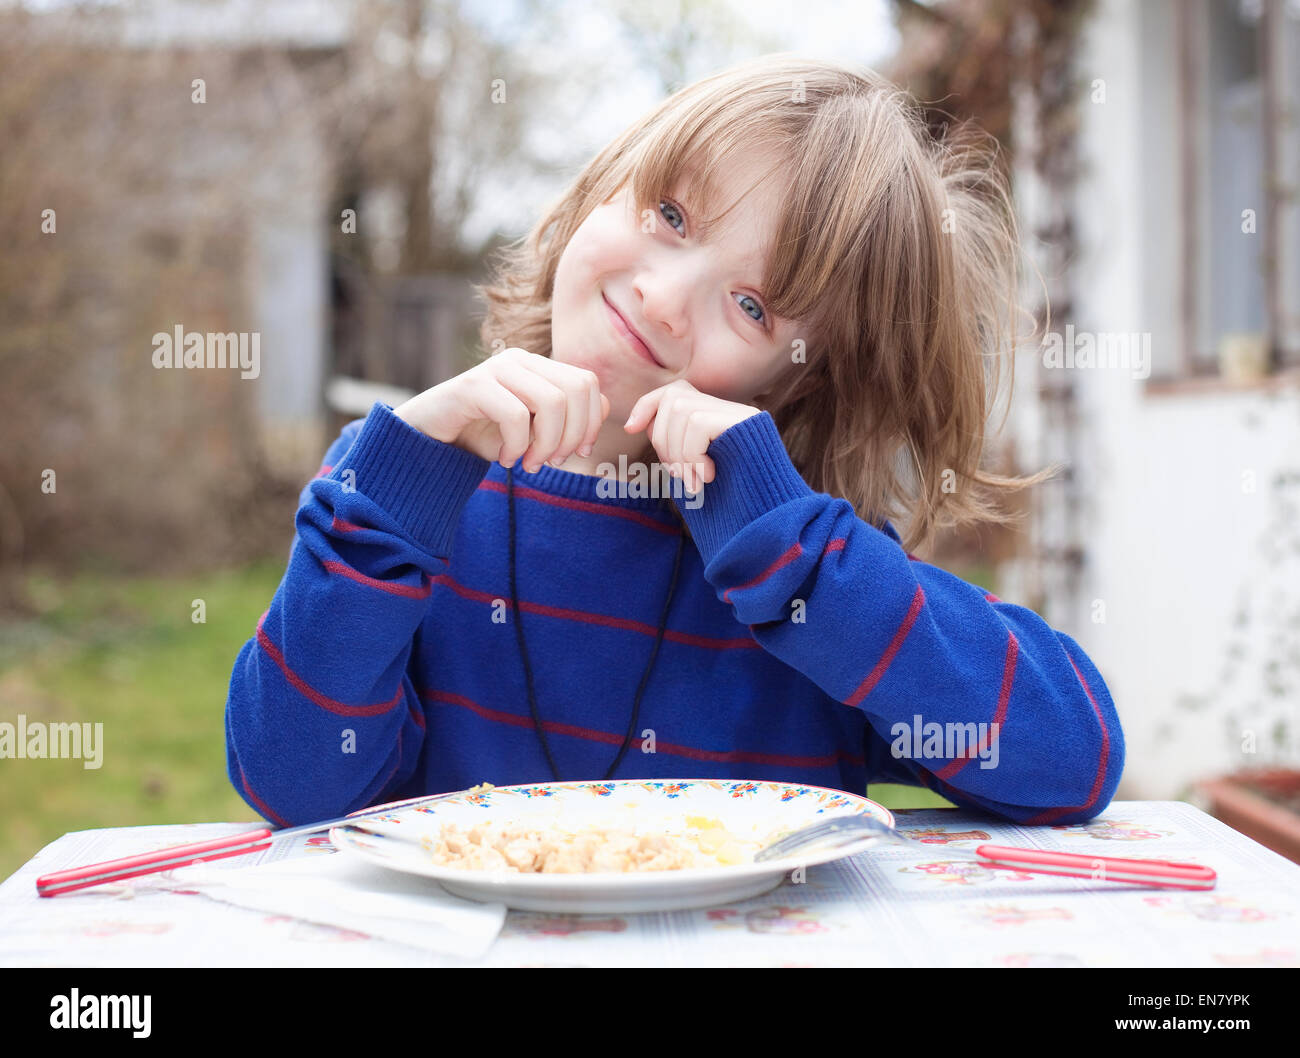 Junge mit blonden Haaren, Essen im freien Lächeln Stockfoto